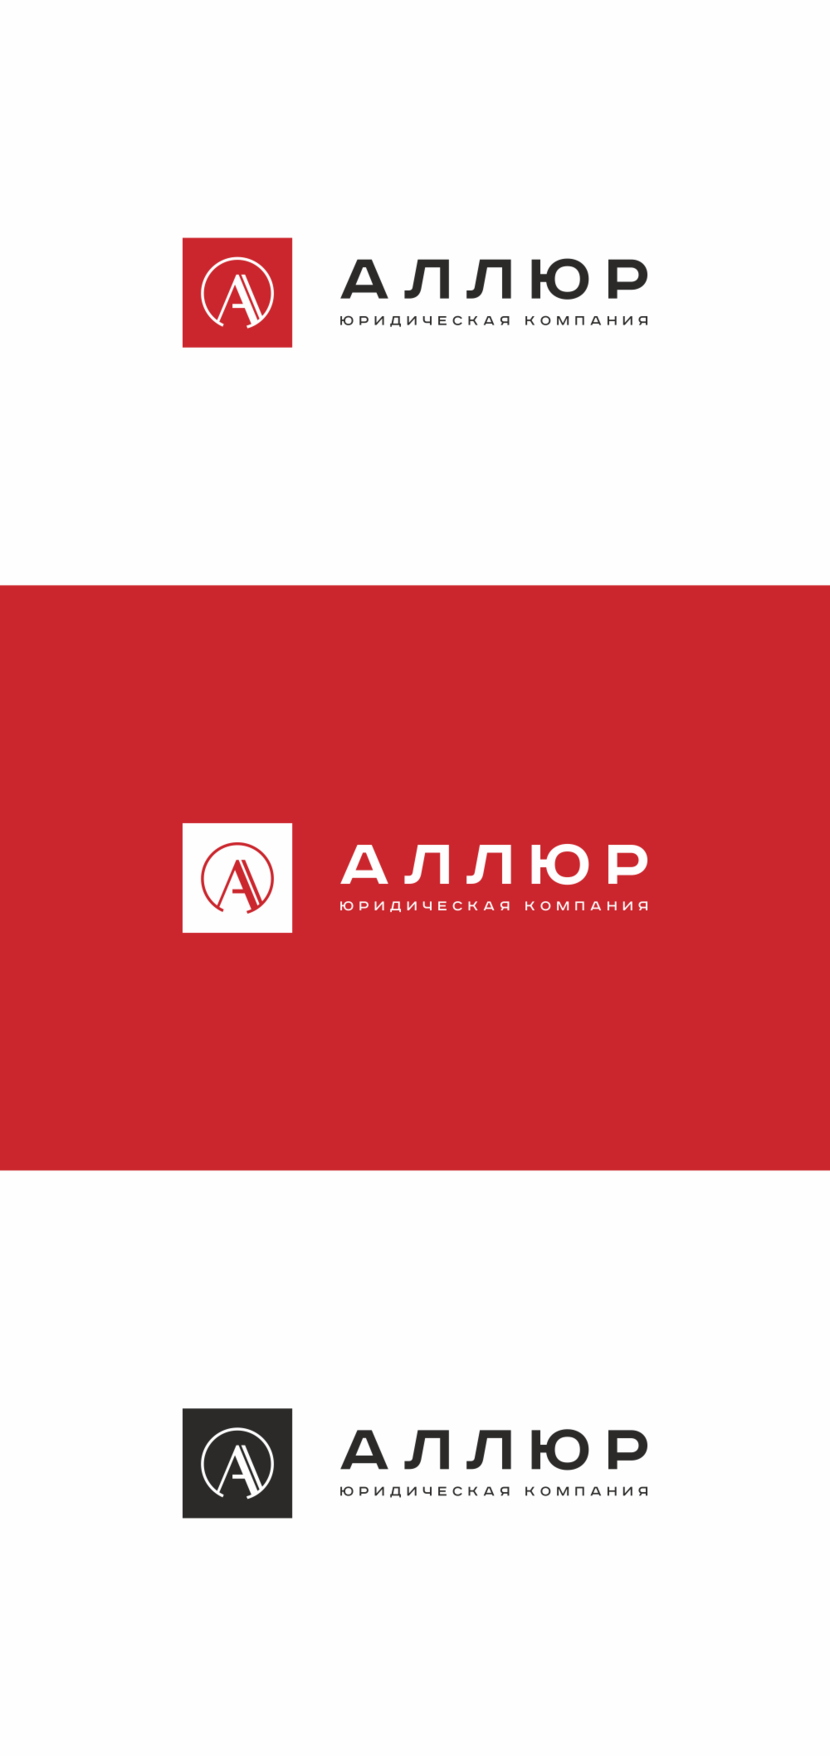 1 - Создание и разработка фирменного стиля и логотипа юридической компании Аллюр.